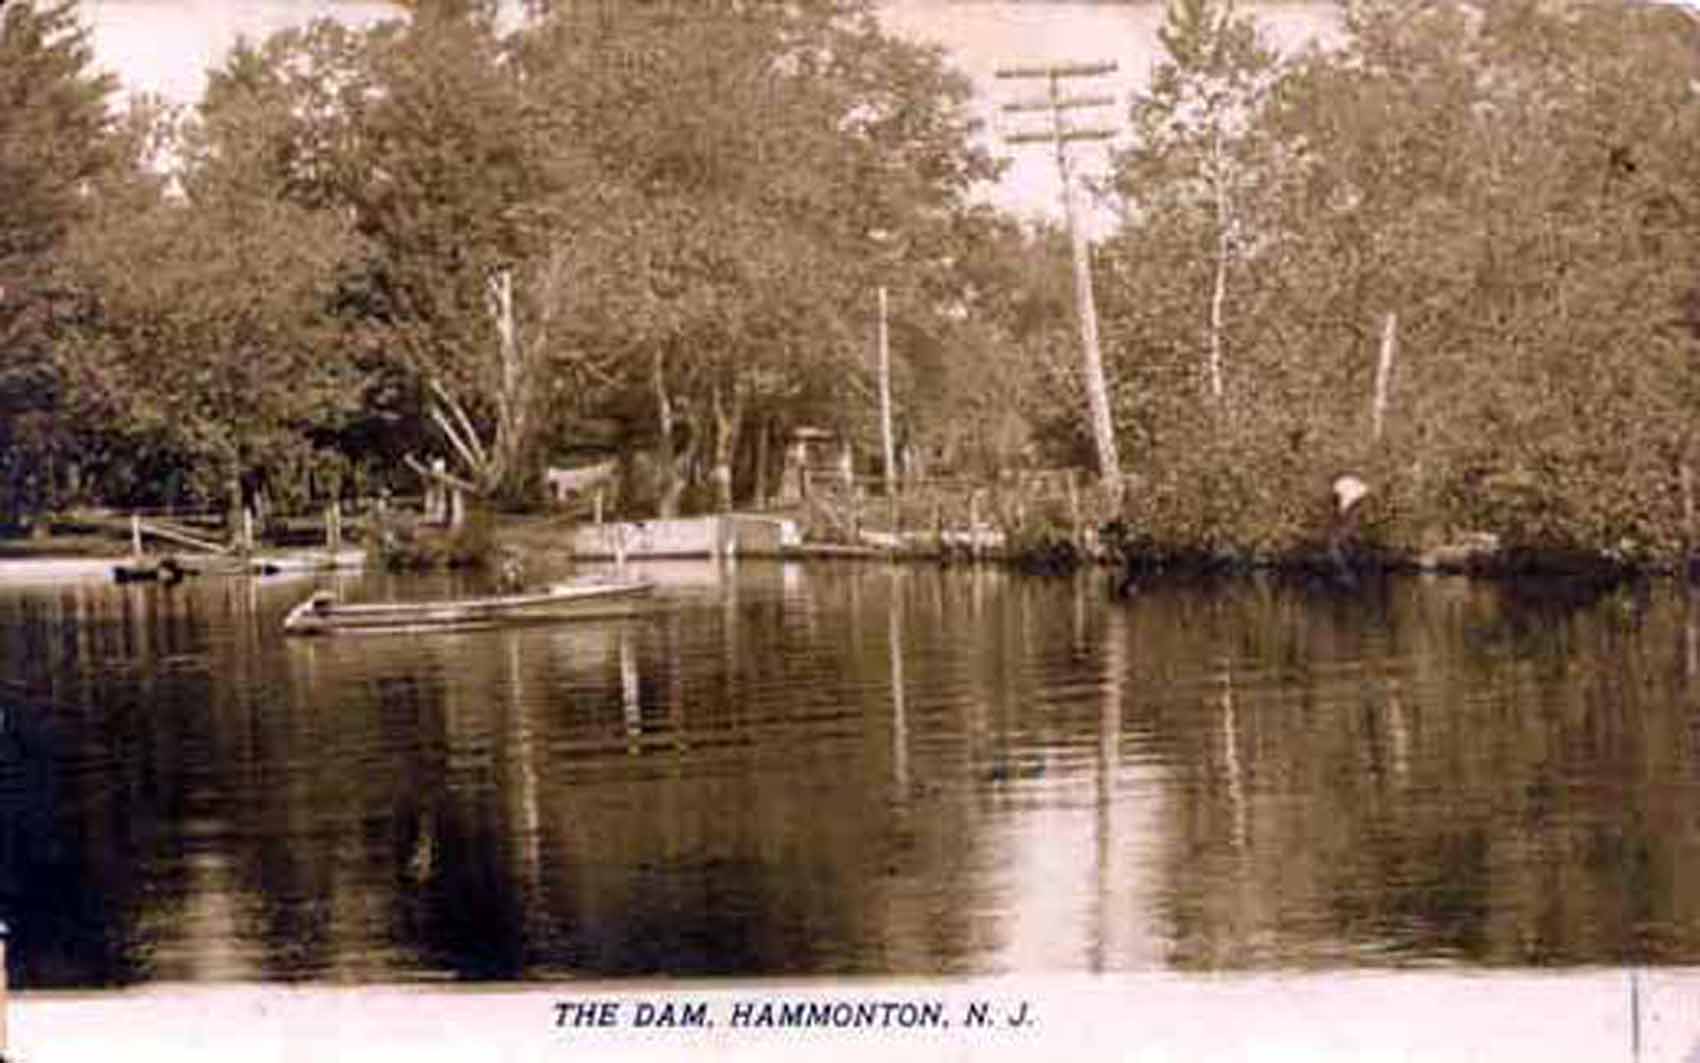 Hammonton - Lake and dam - 1910s